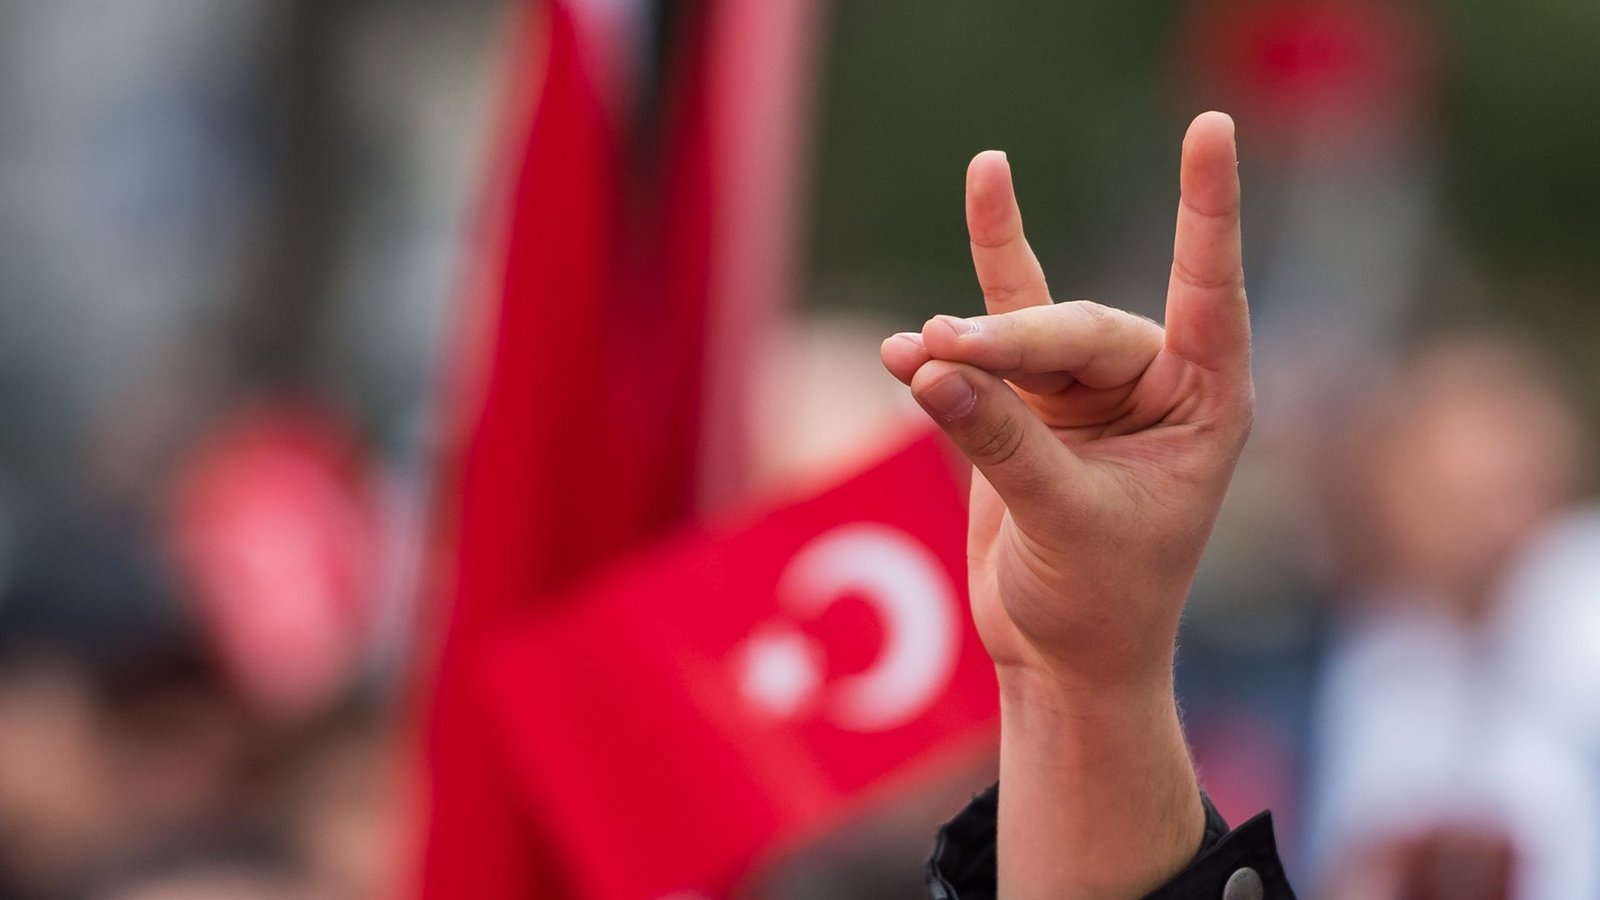 Das Erkennungs- und Begrüßungszeichen der türkisch-rechtsextremistischen Grauen Wölfe.Foto: dpa/Peter Kneffel